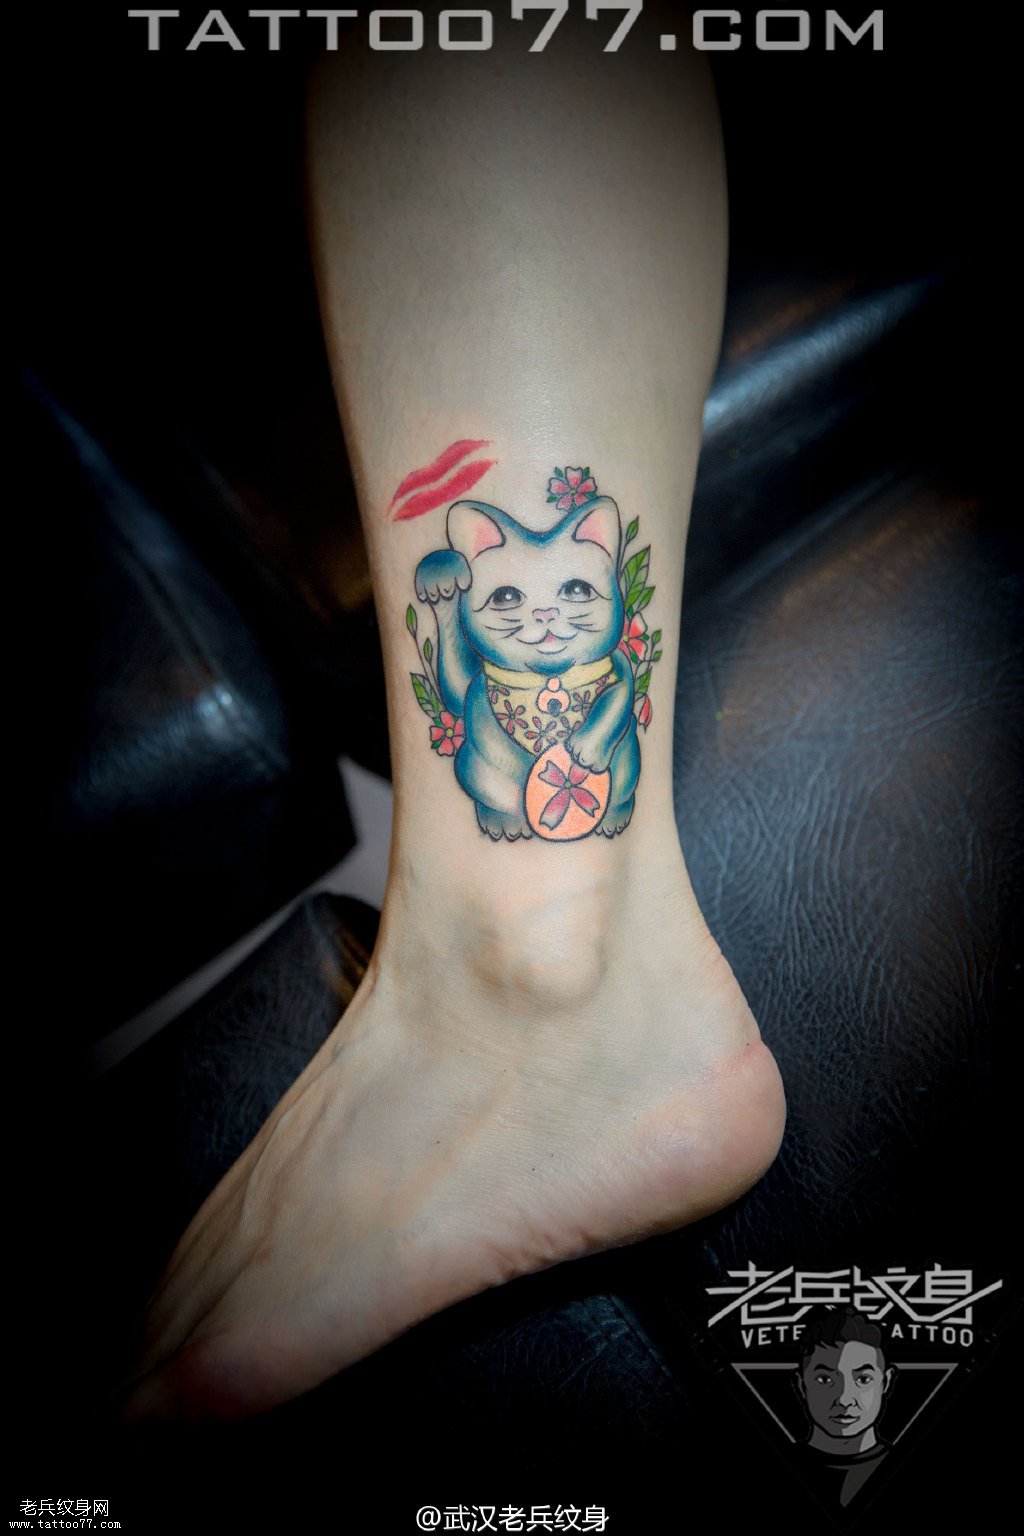 脚踝可爱猫咪纹身图案作品